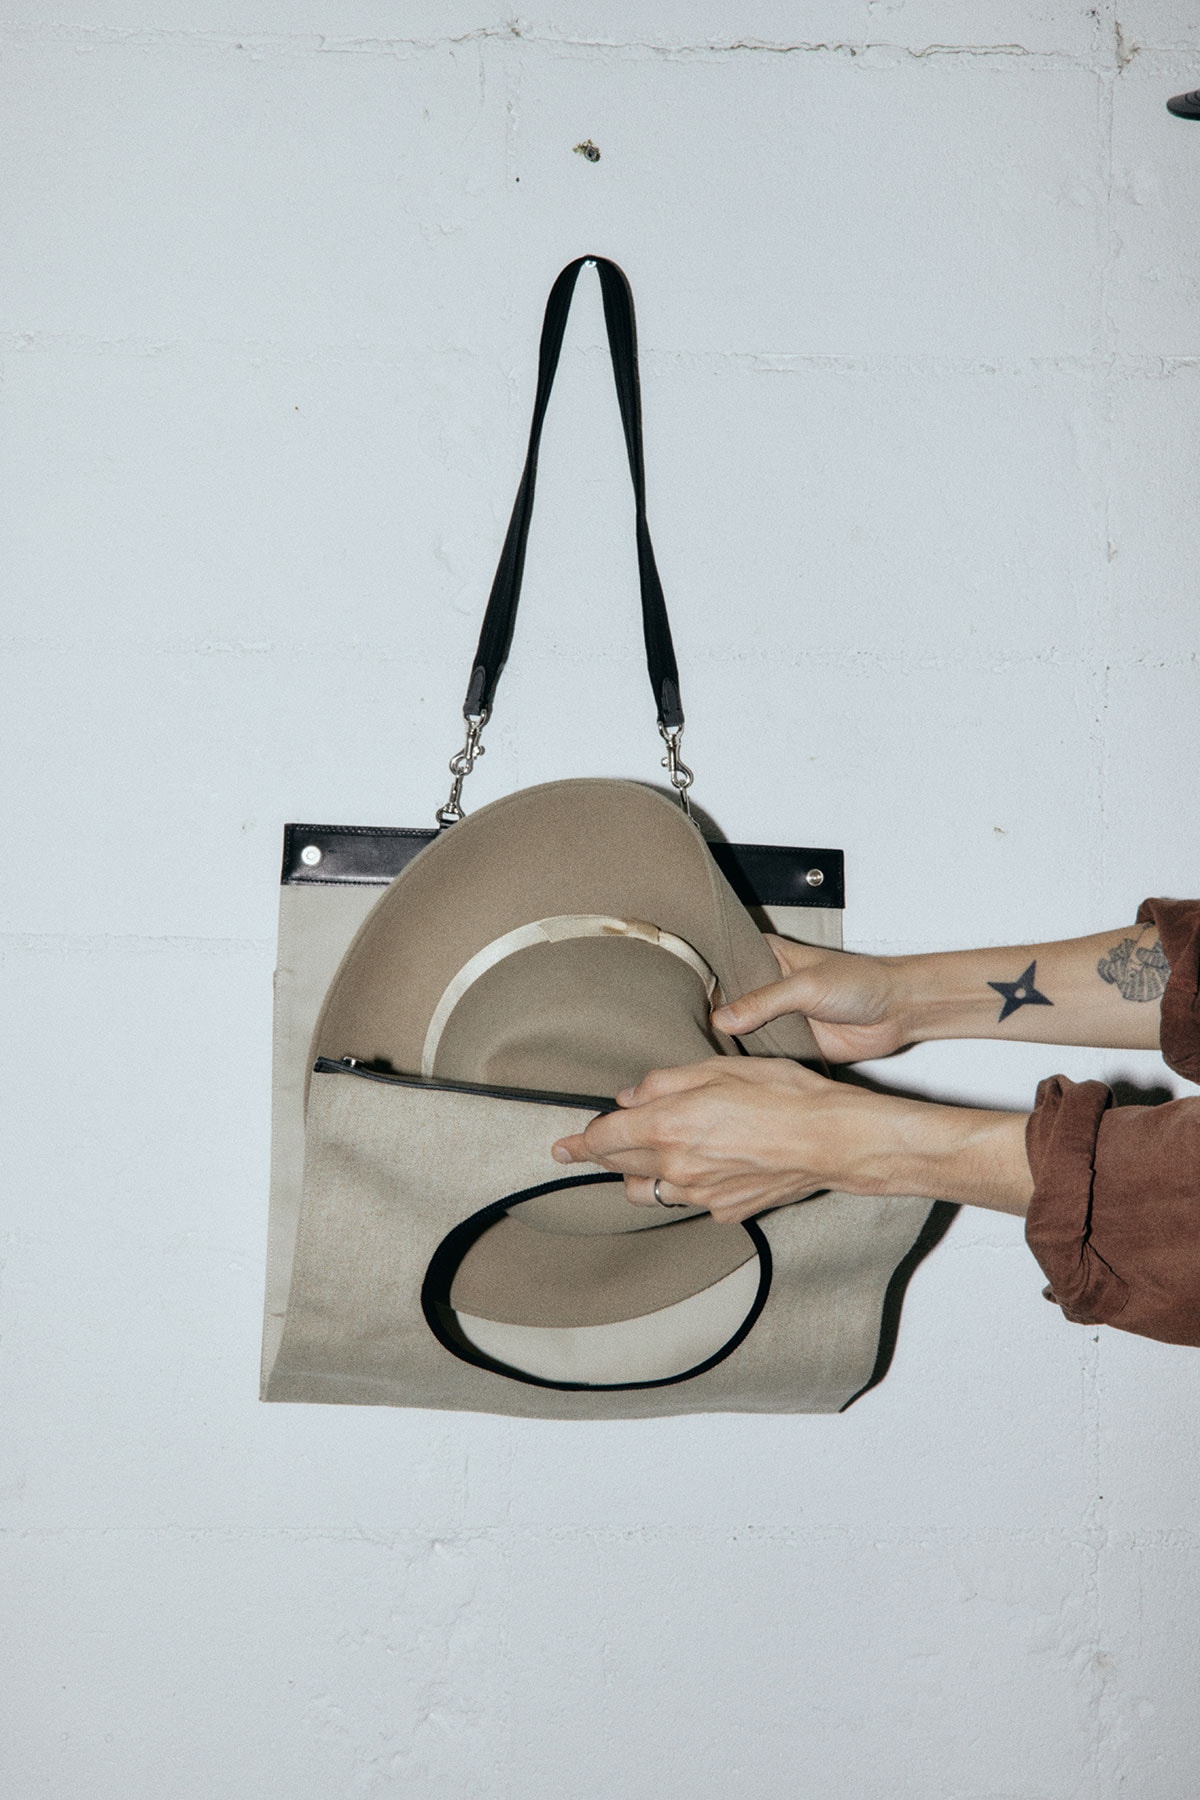 キジマ タカユキから アーツ&サイエンス 制作による“ハットが携帯できる”トートバッグが発売 KIJIMA TAKAYUK x ARTS & SCIENCE Hat lover's bag release info